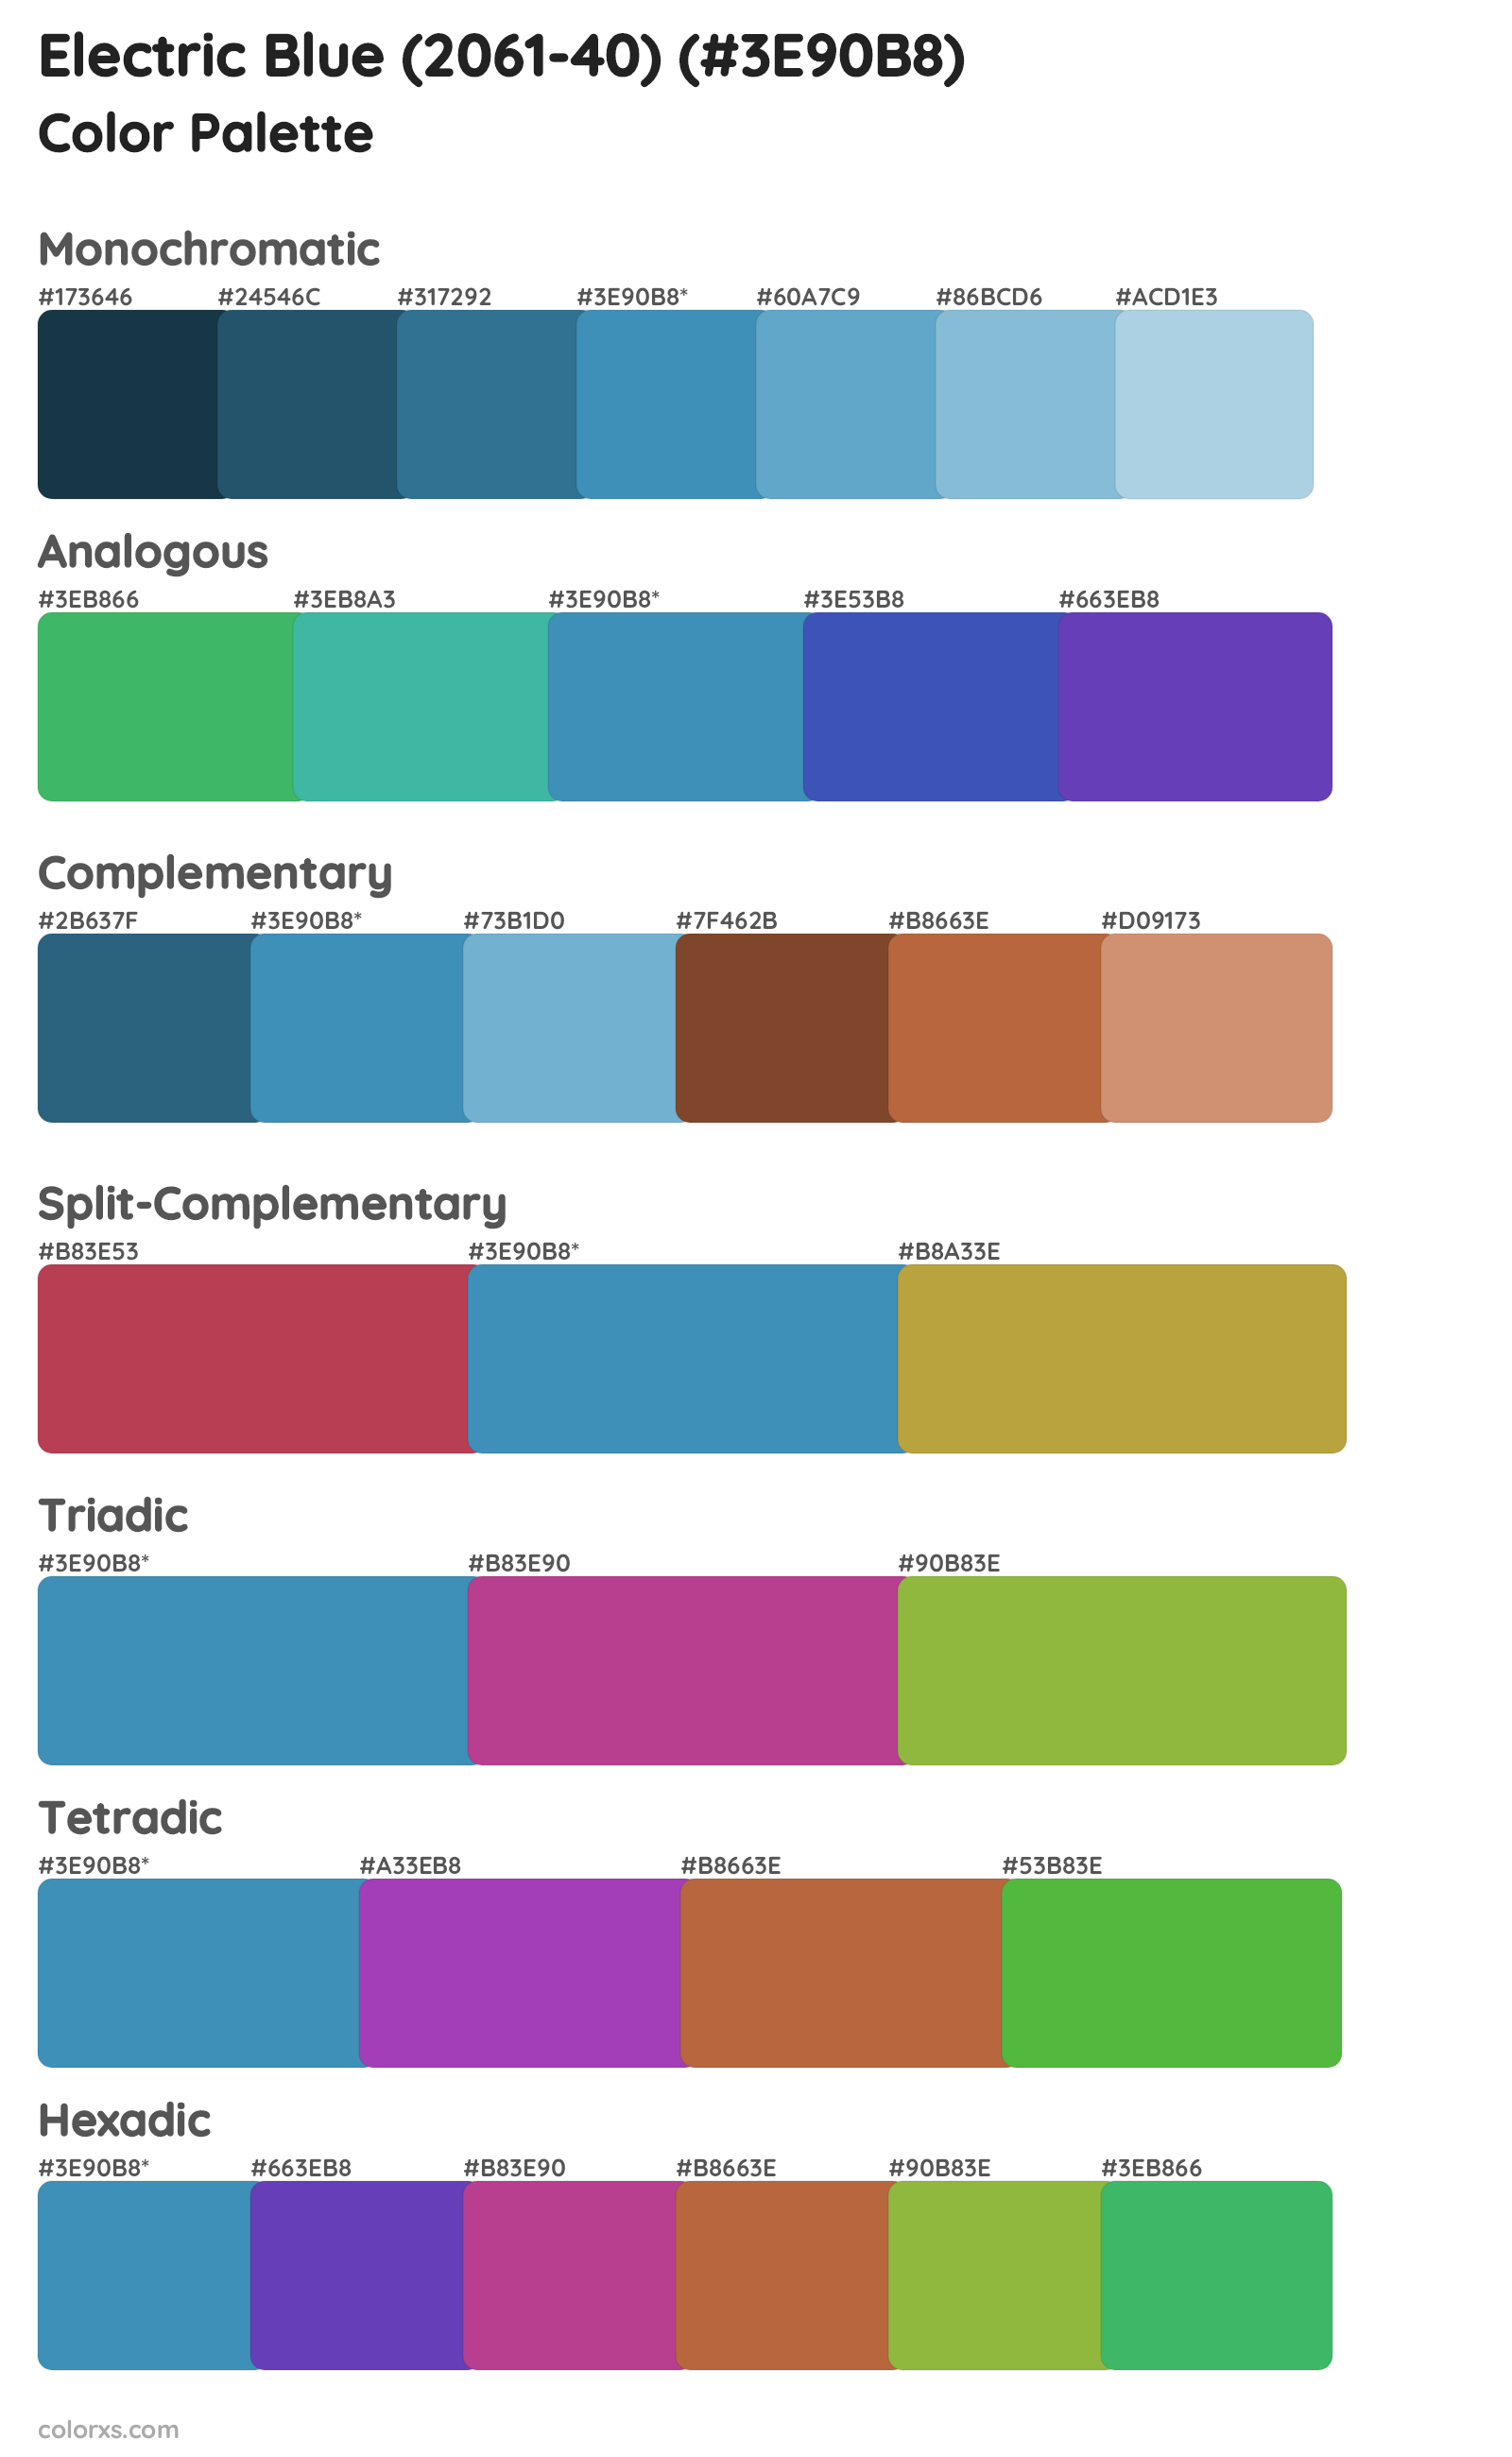 Electric Blue (2061-40) Color Scheme Palettes